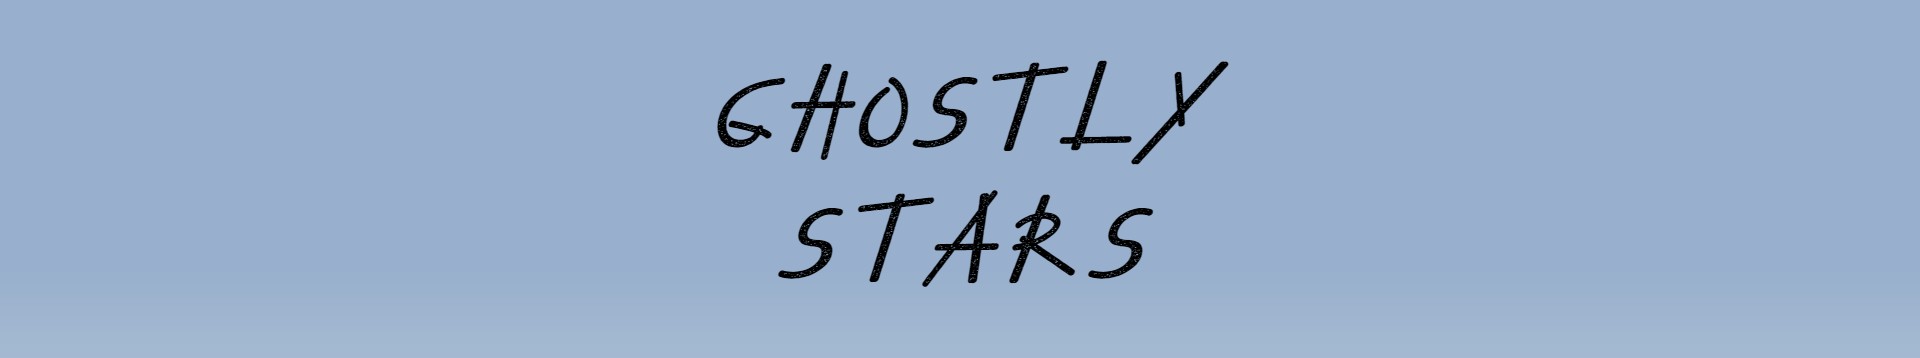 GhostlyStars